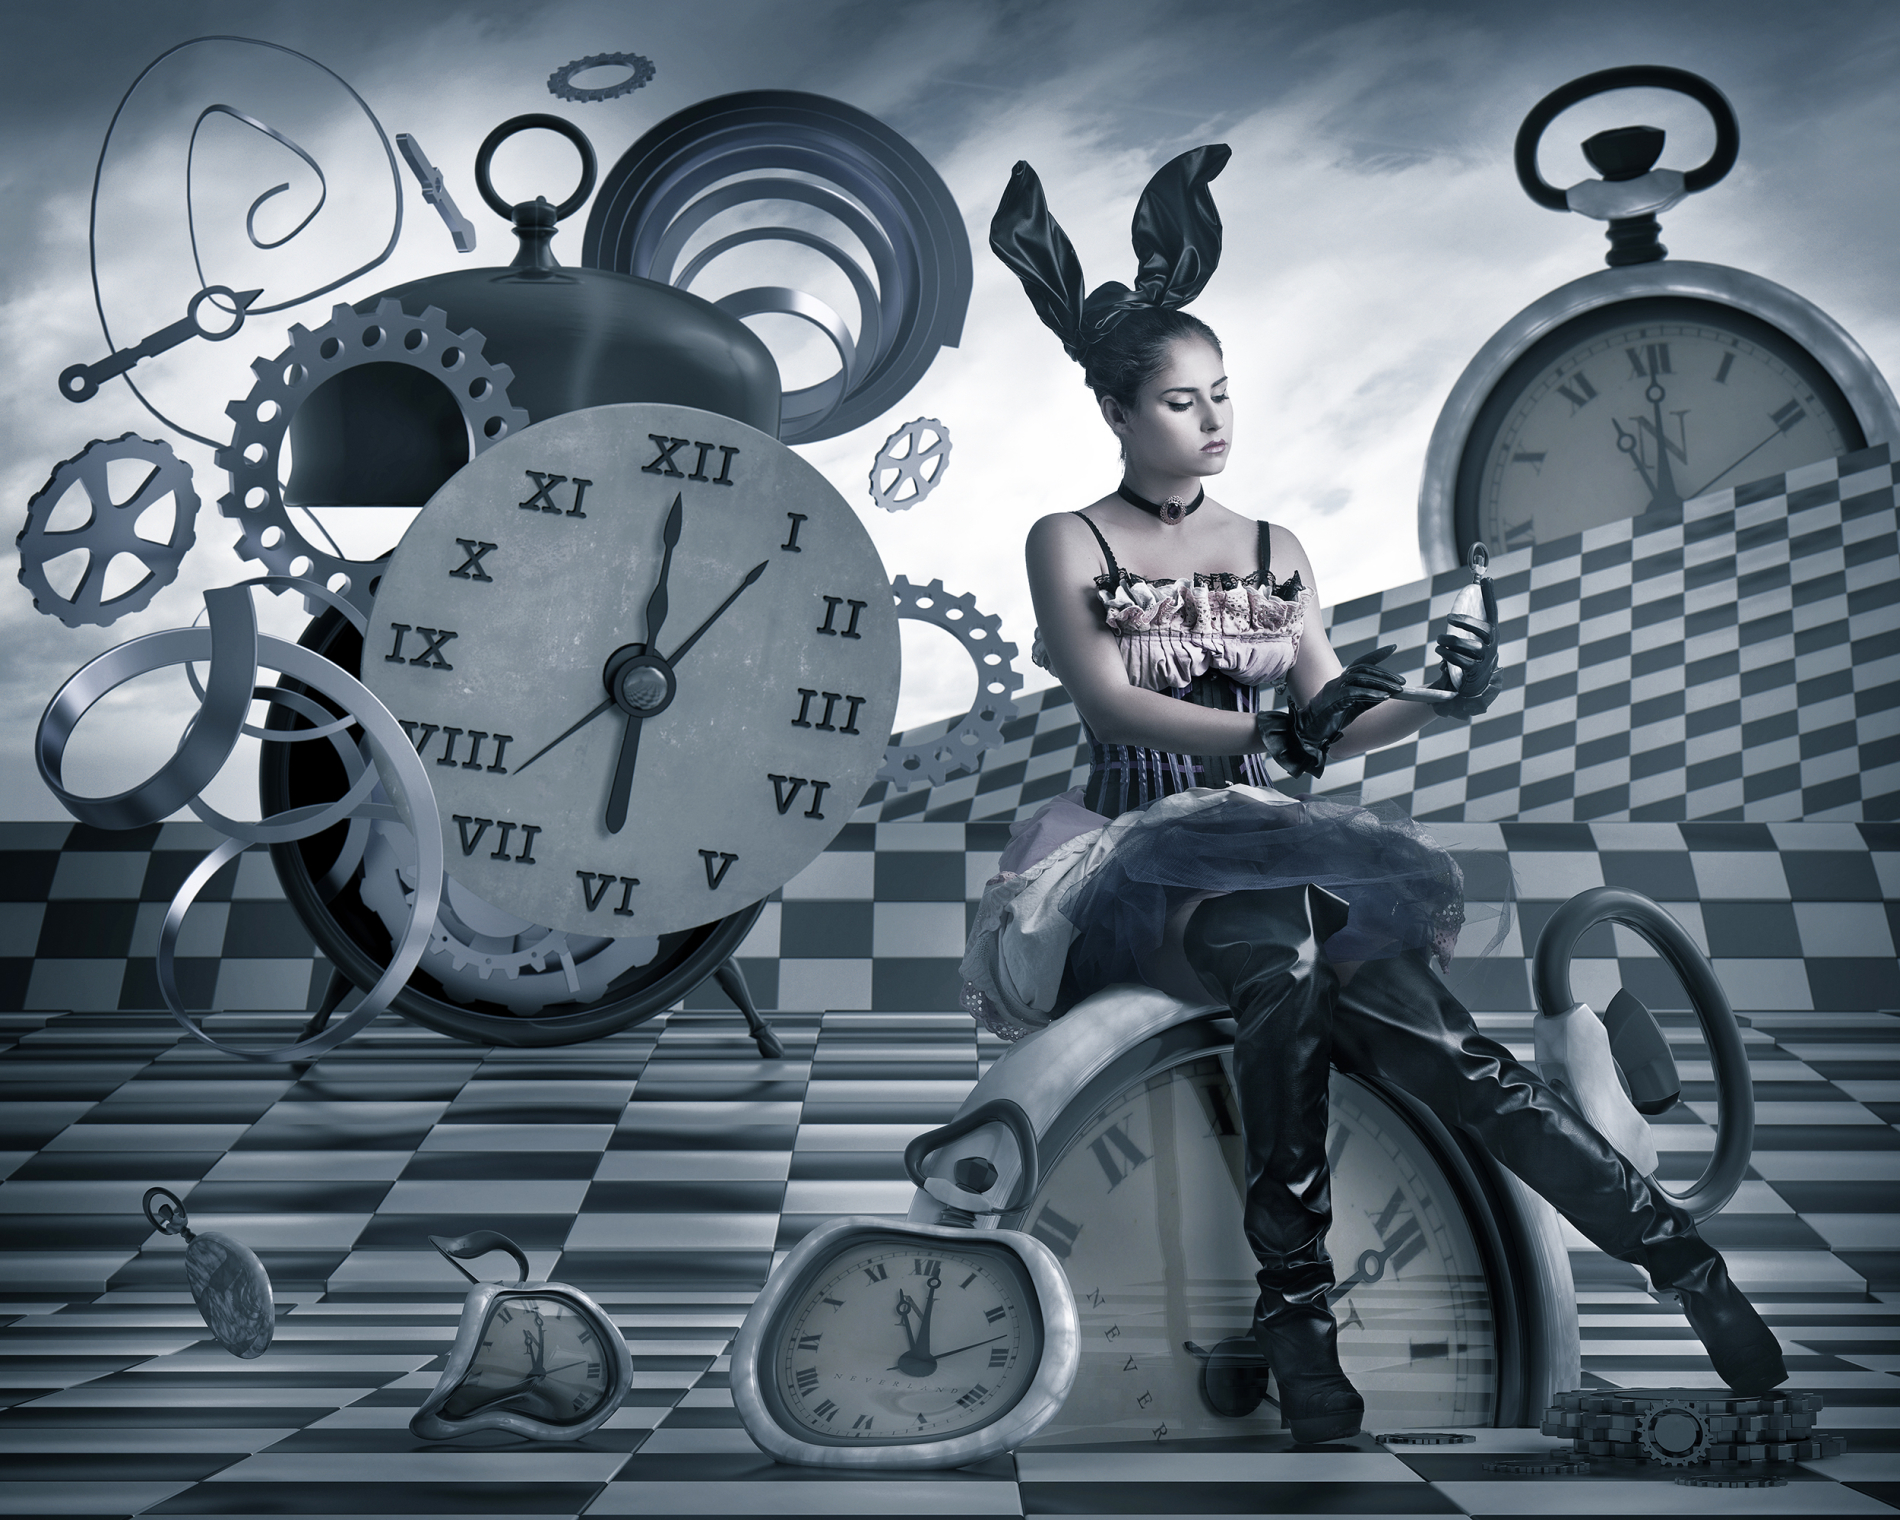 Слушать часы 9. Механизм часов. Рисунки фэнтези часы оригинальный дизайн. Часы Алиса. Steampunk Gears.